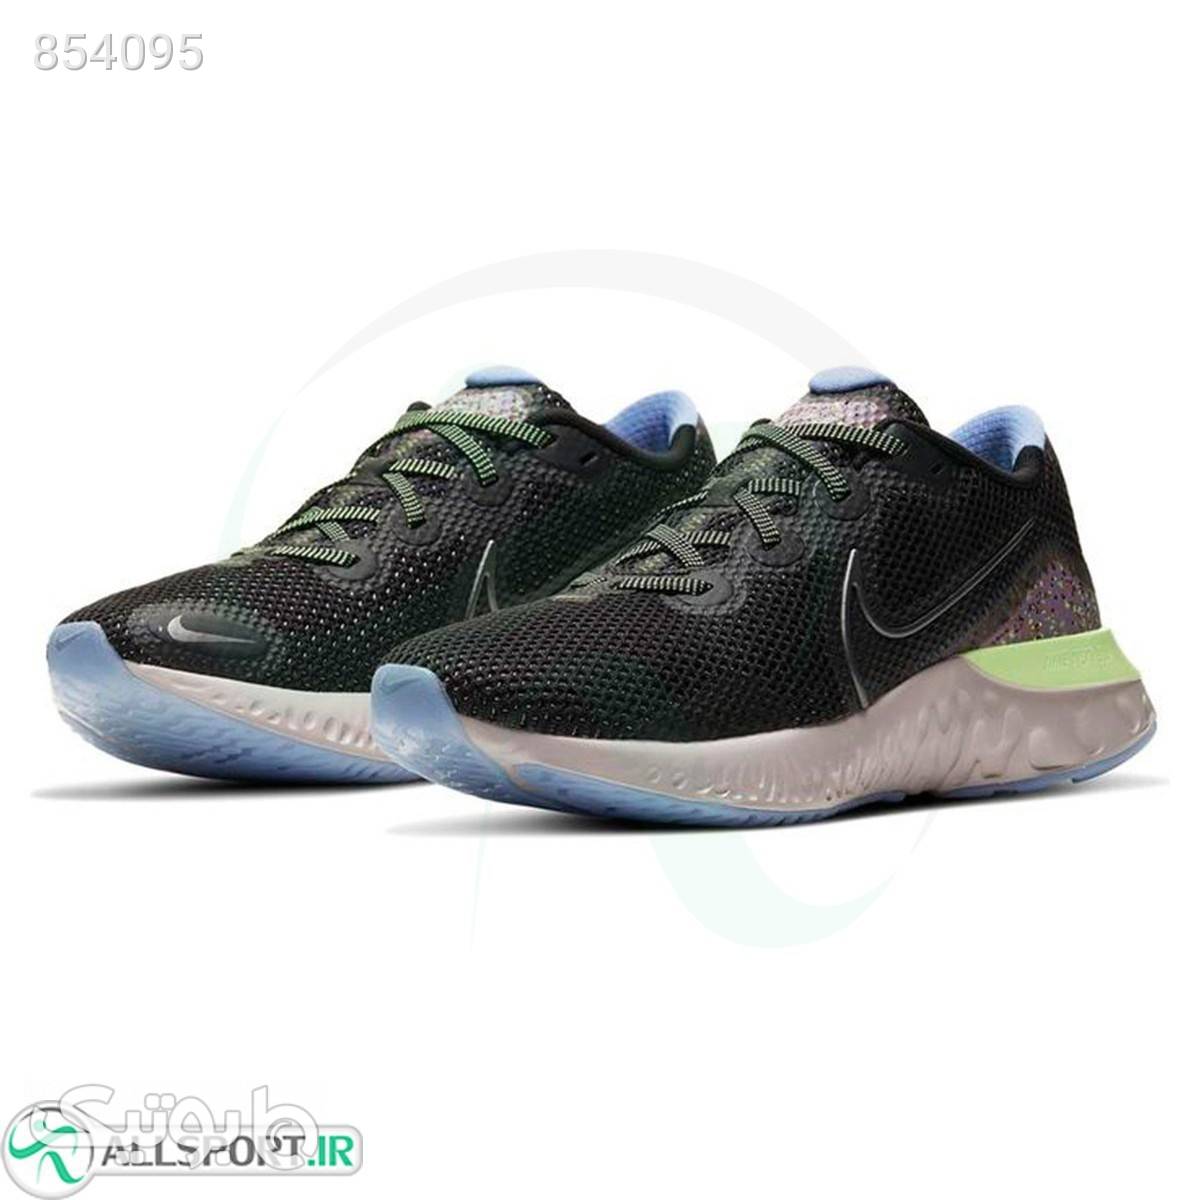 کتانی رانینگ مردانه نایک Nike Renew CT3515001